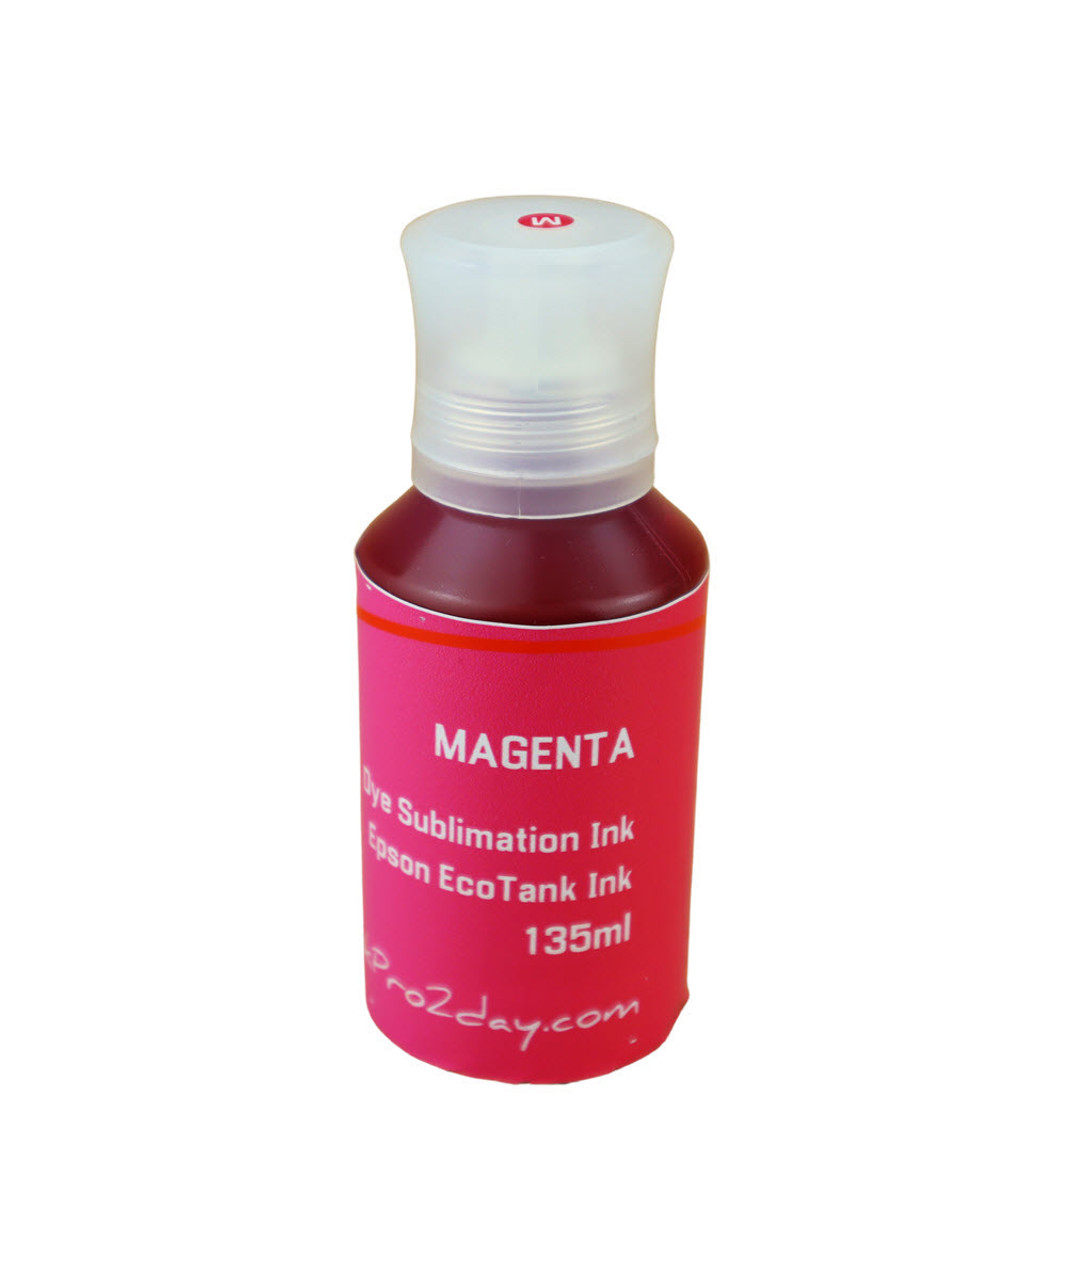 Magenta Dye Sublimation Ink 135ml Bottle for EPSON EcoTank ET-7700 ET-7750 Printer
